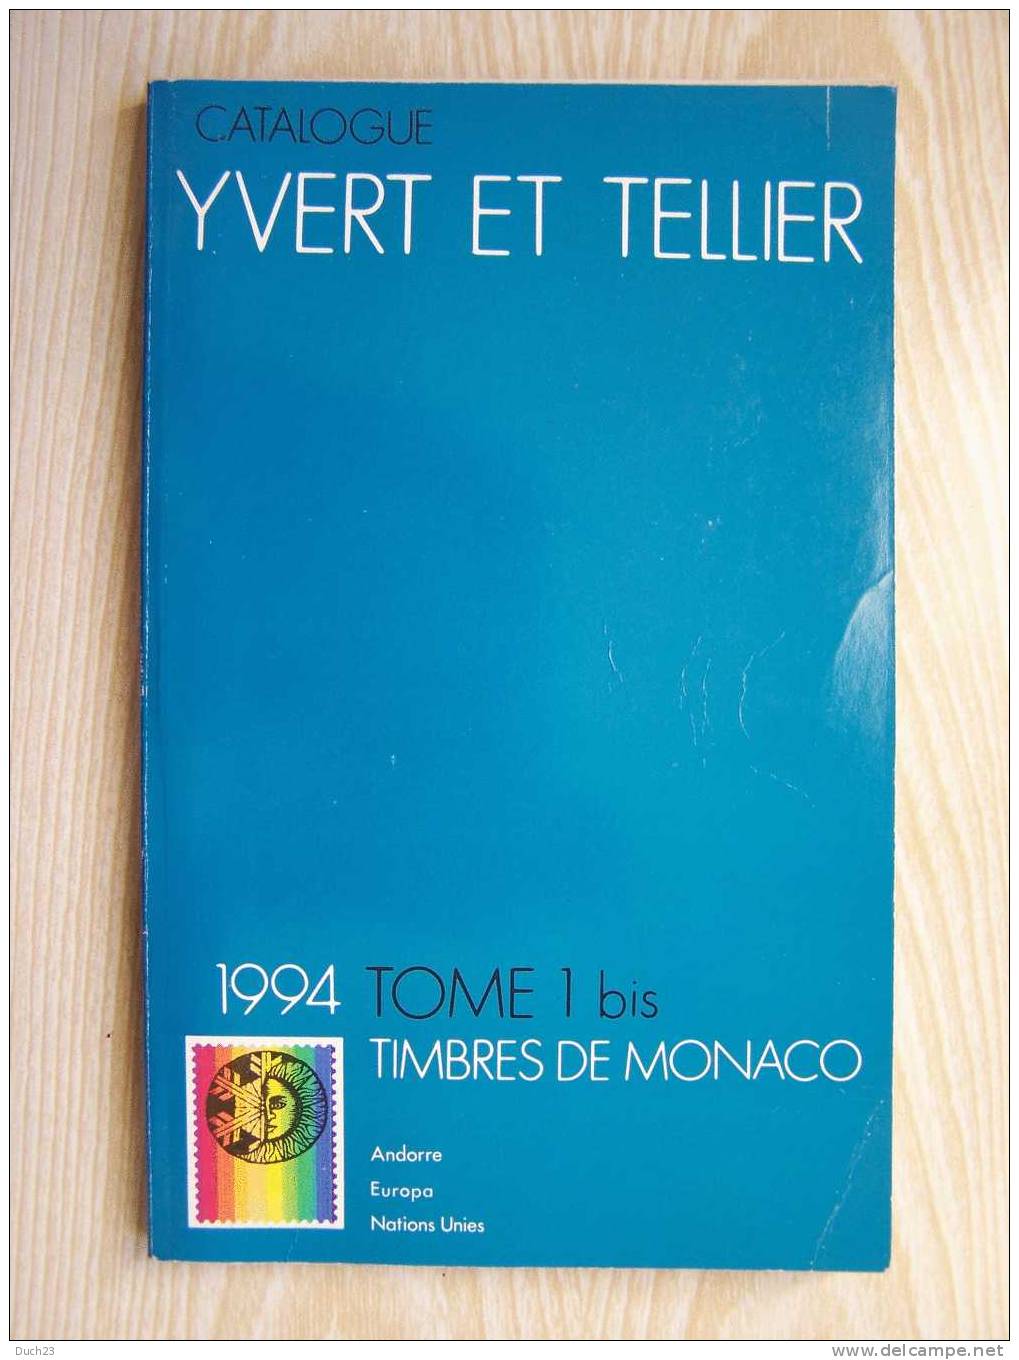 CATALOGUE DE COTATION YVERT ET TELLIER ANNEE 1994 TOME 1 BIS  TRES BON ETAT   REF CD - Francia